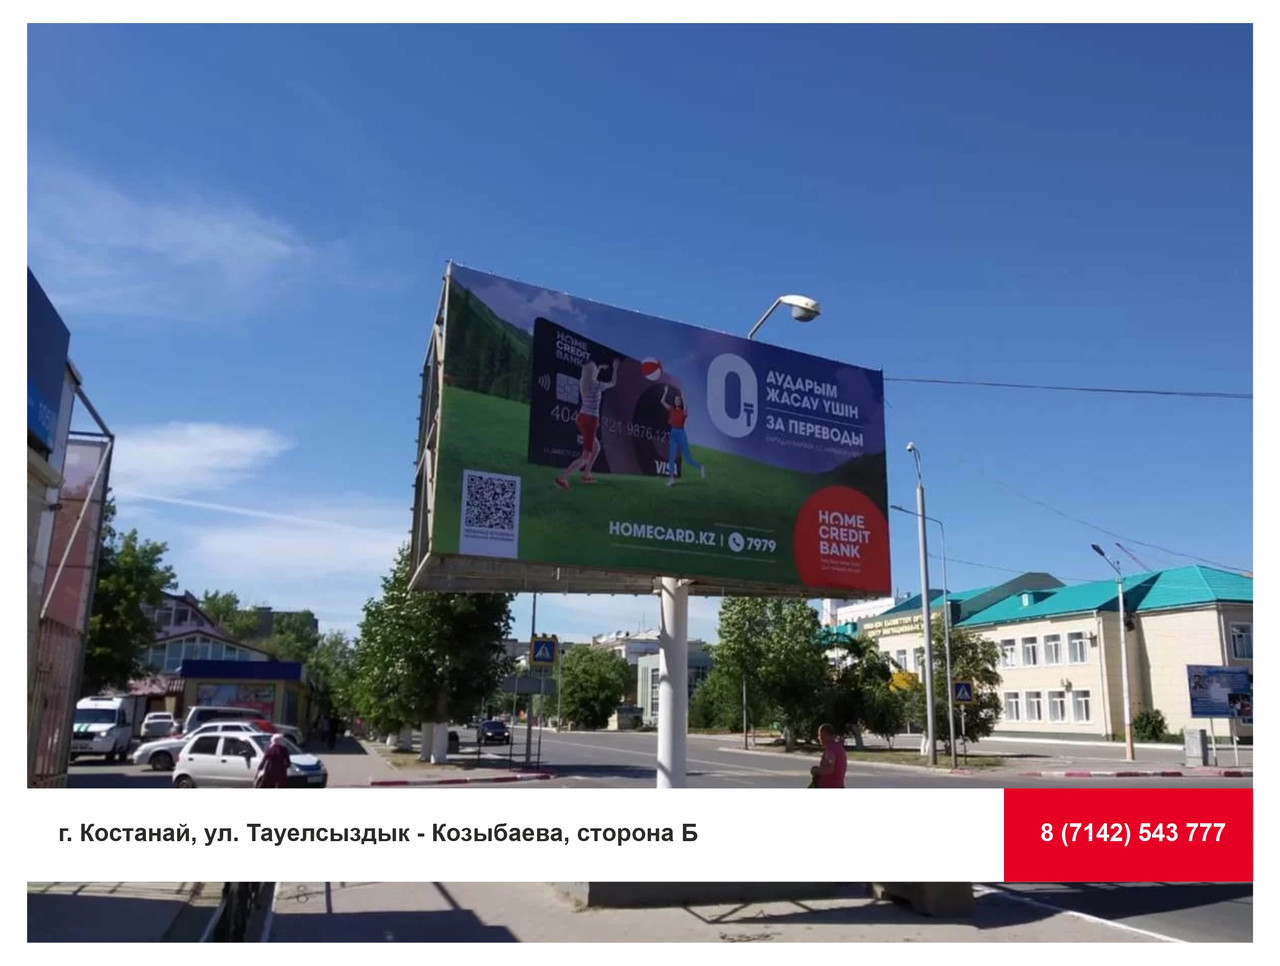 Аренда билборда г. Костанай, ул. Тауелсыздык - Козыбаева, сторона Б